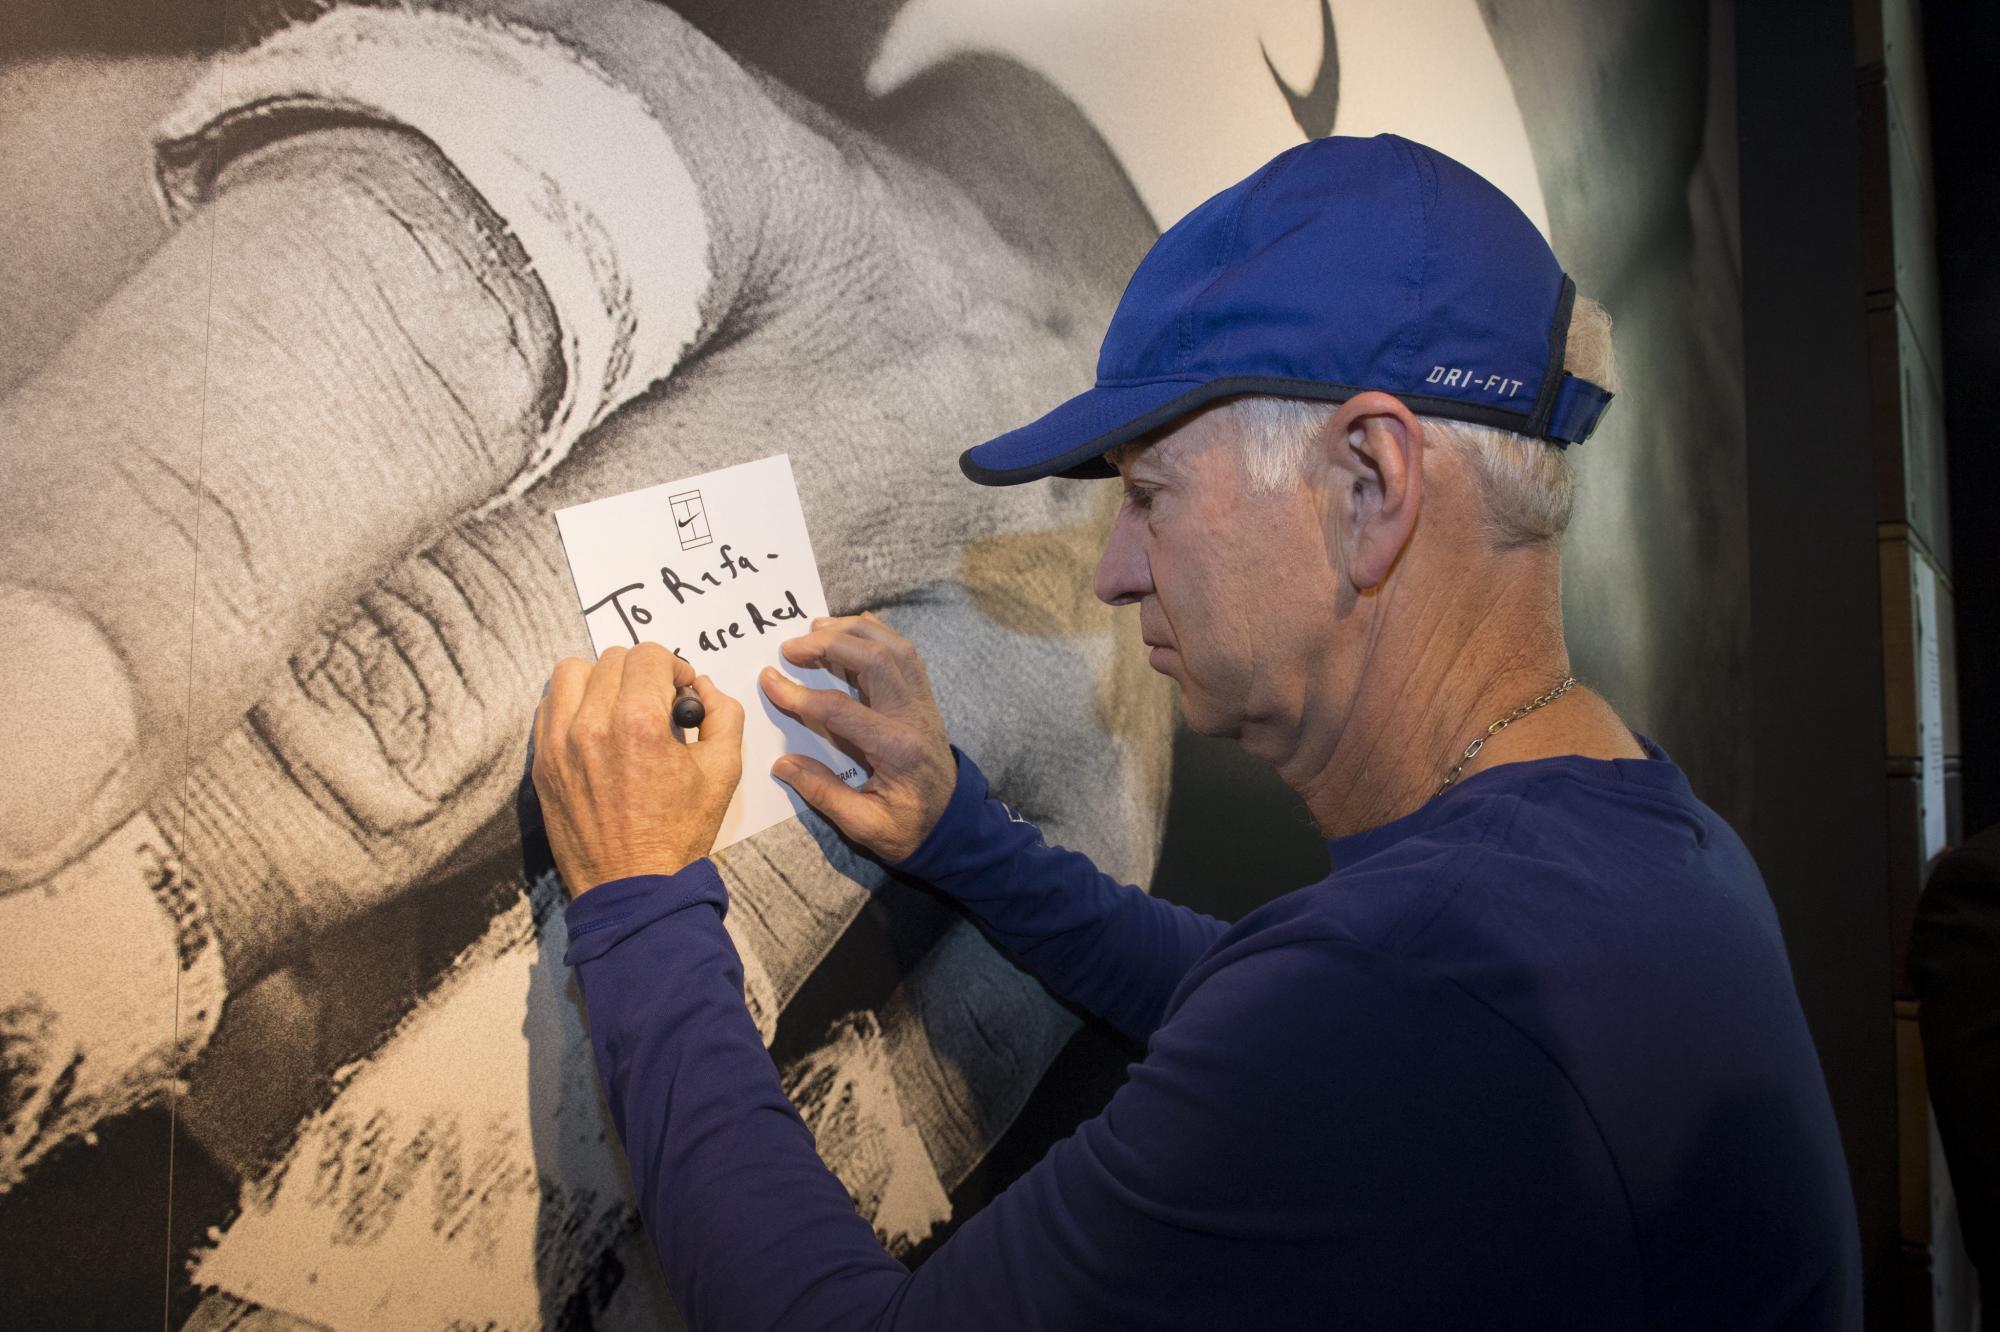 La leyenda del tenis estadounidense John McEnroe escribe un mensaje de apoyo a Rafael Nadal en el muro que Nike ha colgado en París (Francia) para que jugadores profesionales, amateurs y fans apoyen al tenista mallorquín durante Roland Garros.